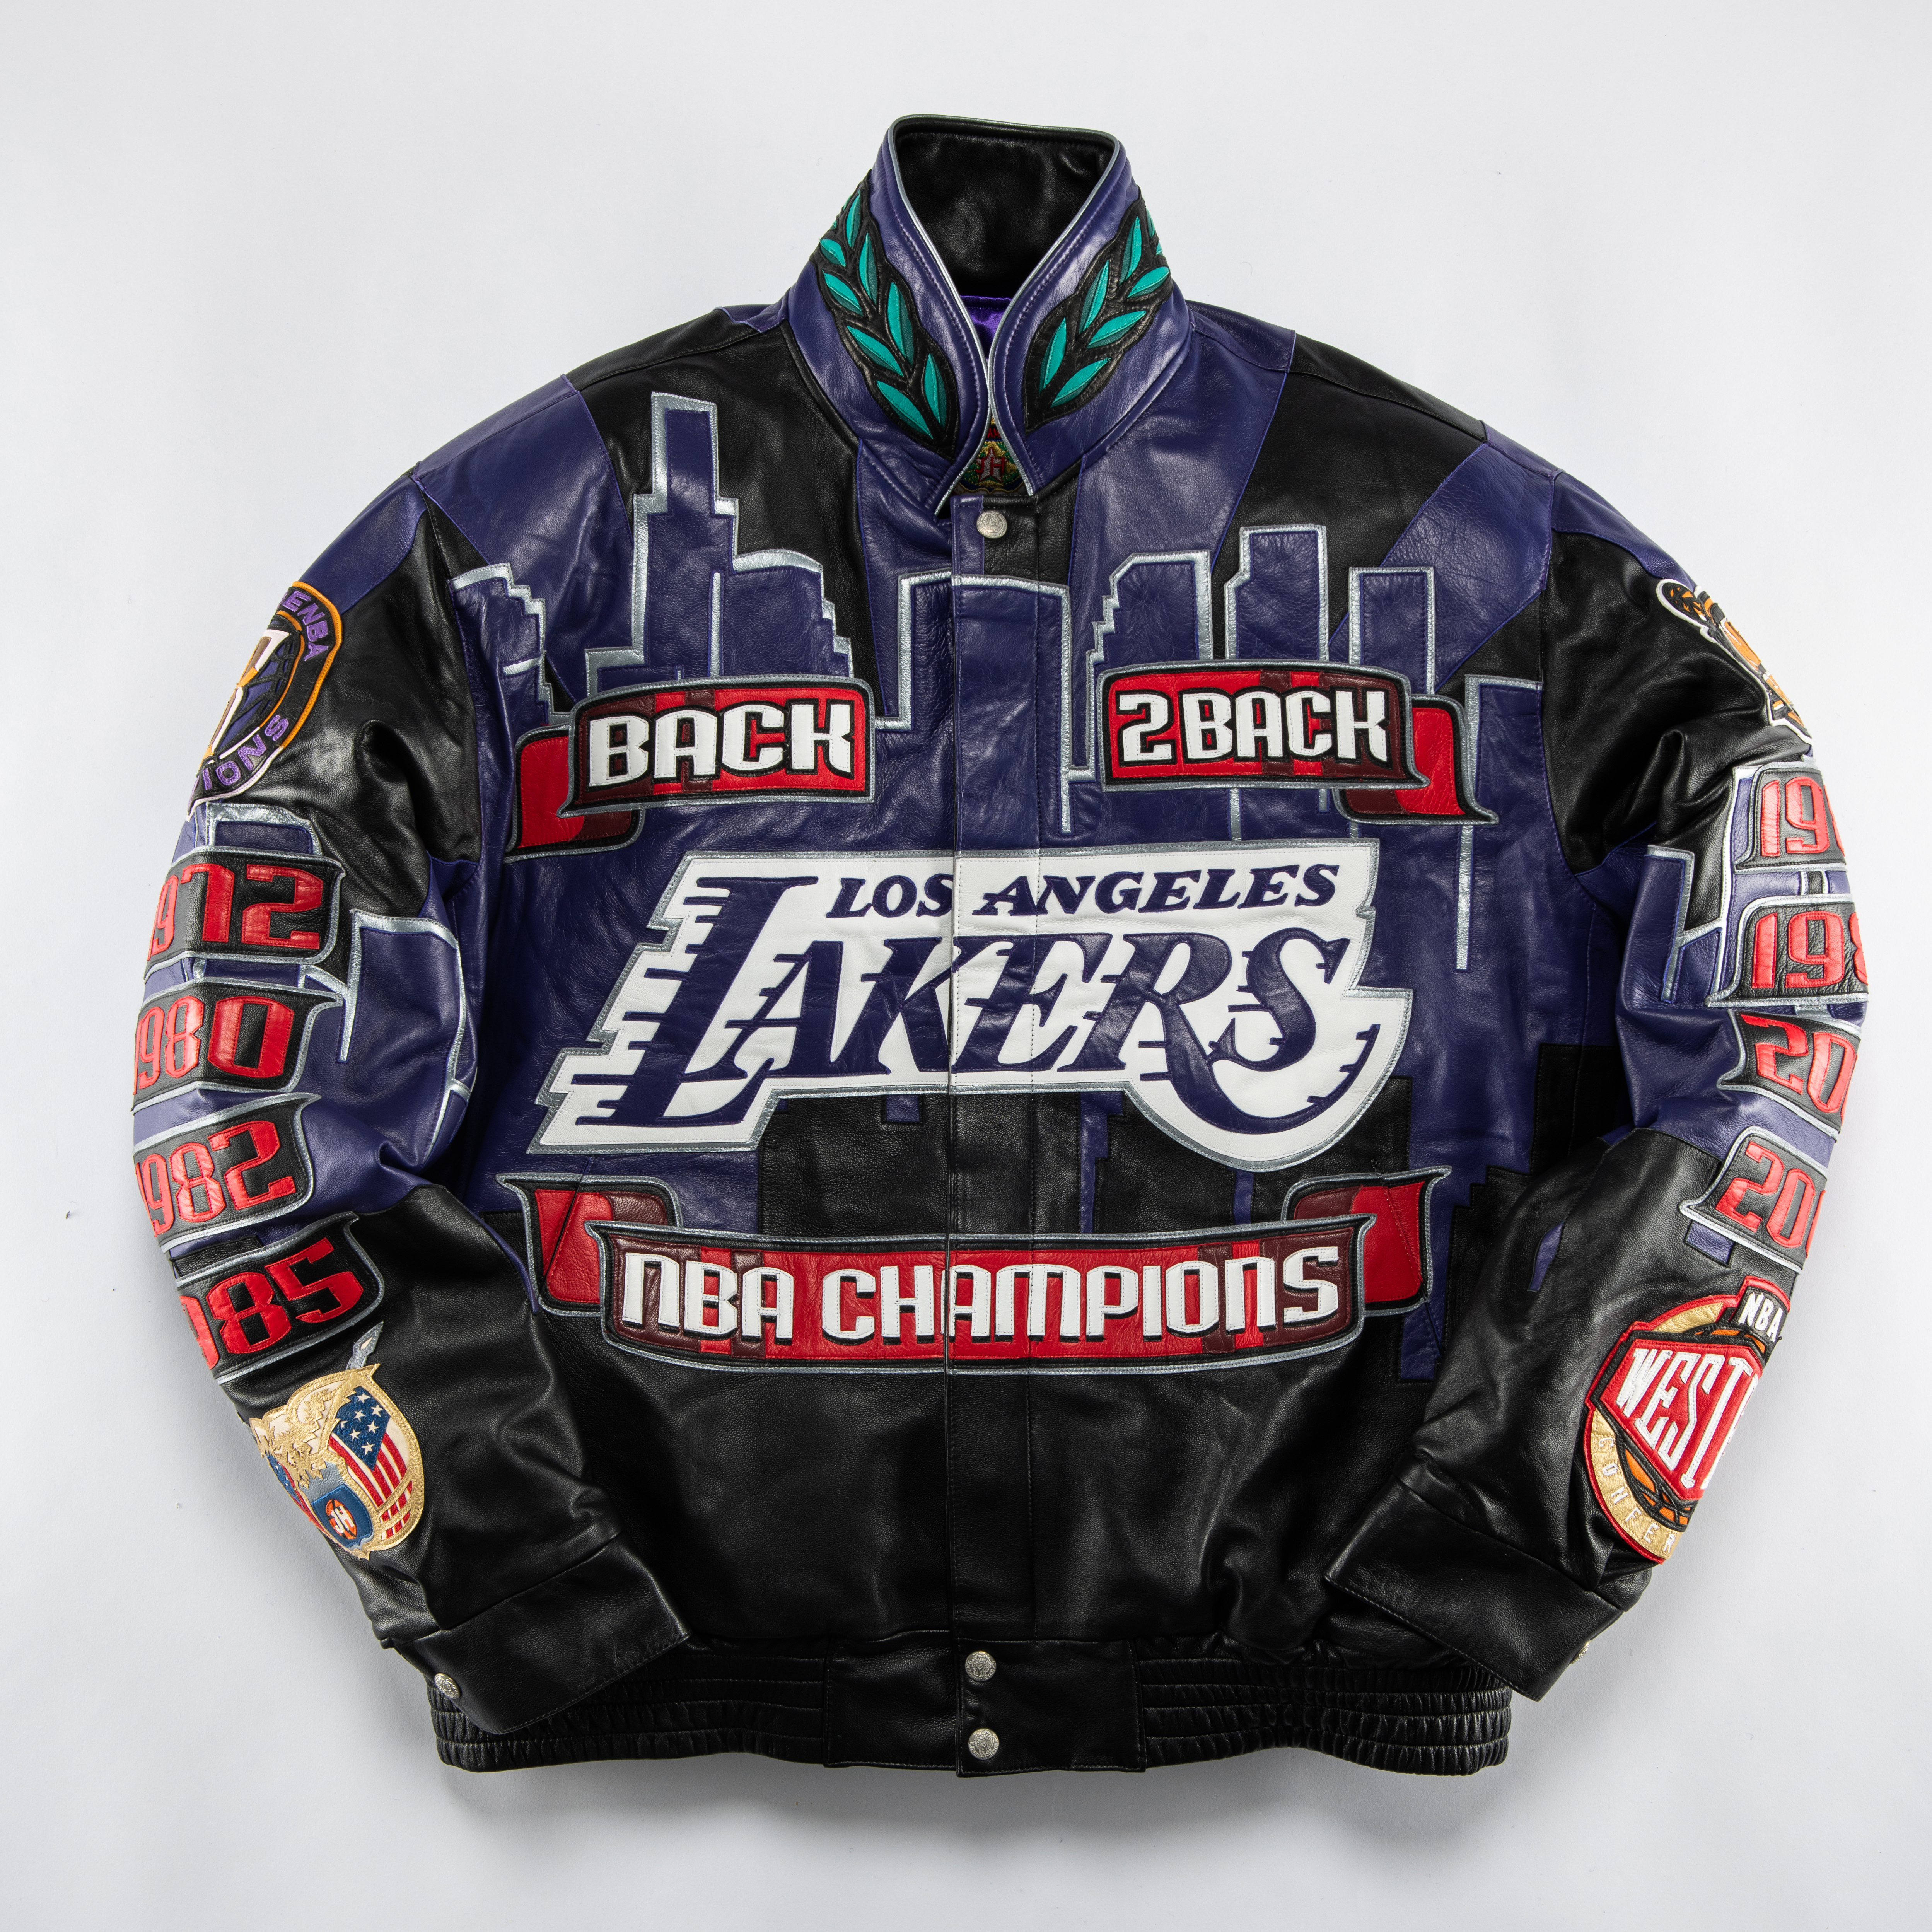 L.A. Lakers NBA Champs 2000 Men leather jacket Size XL Jeff